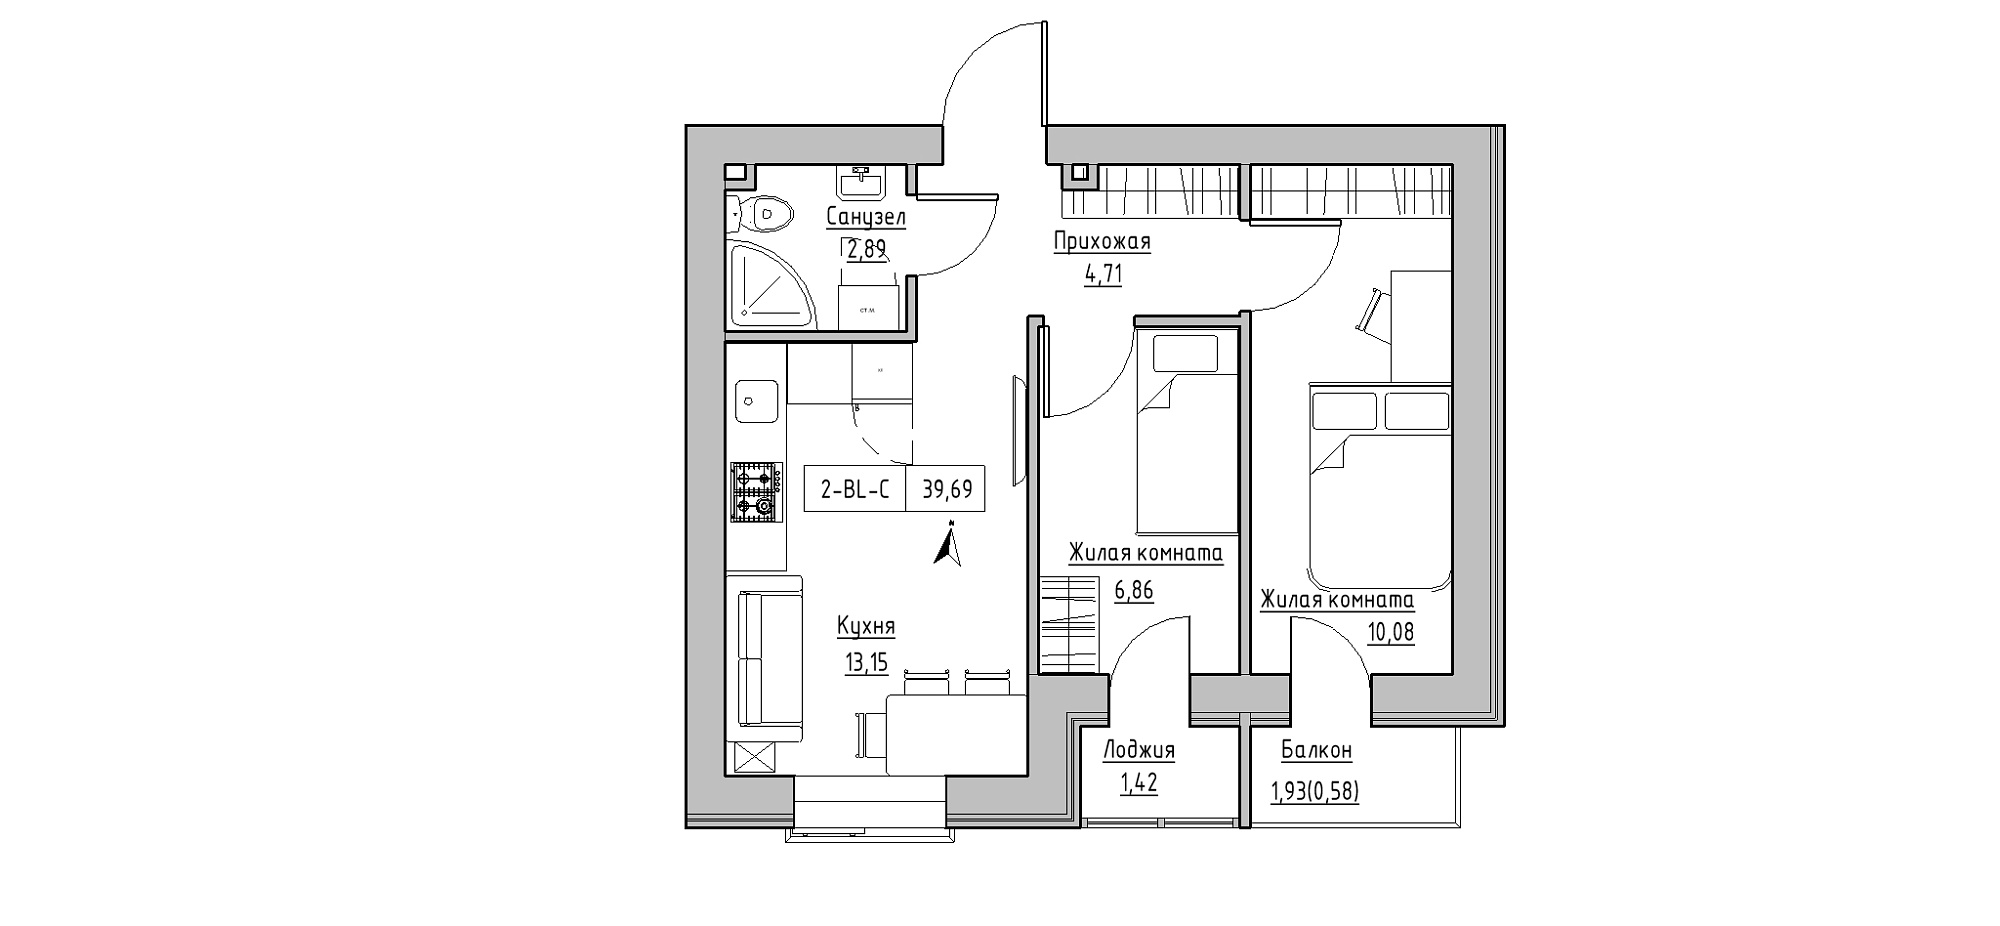 Планировка 2-к квартира площей 39.69м2, KS-020-02/0005.